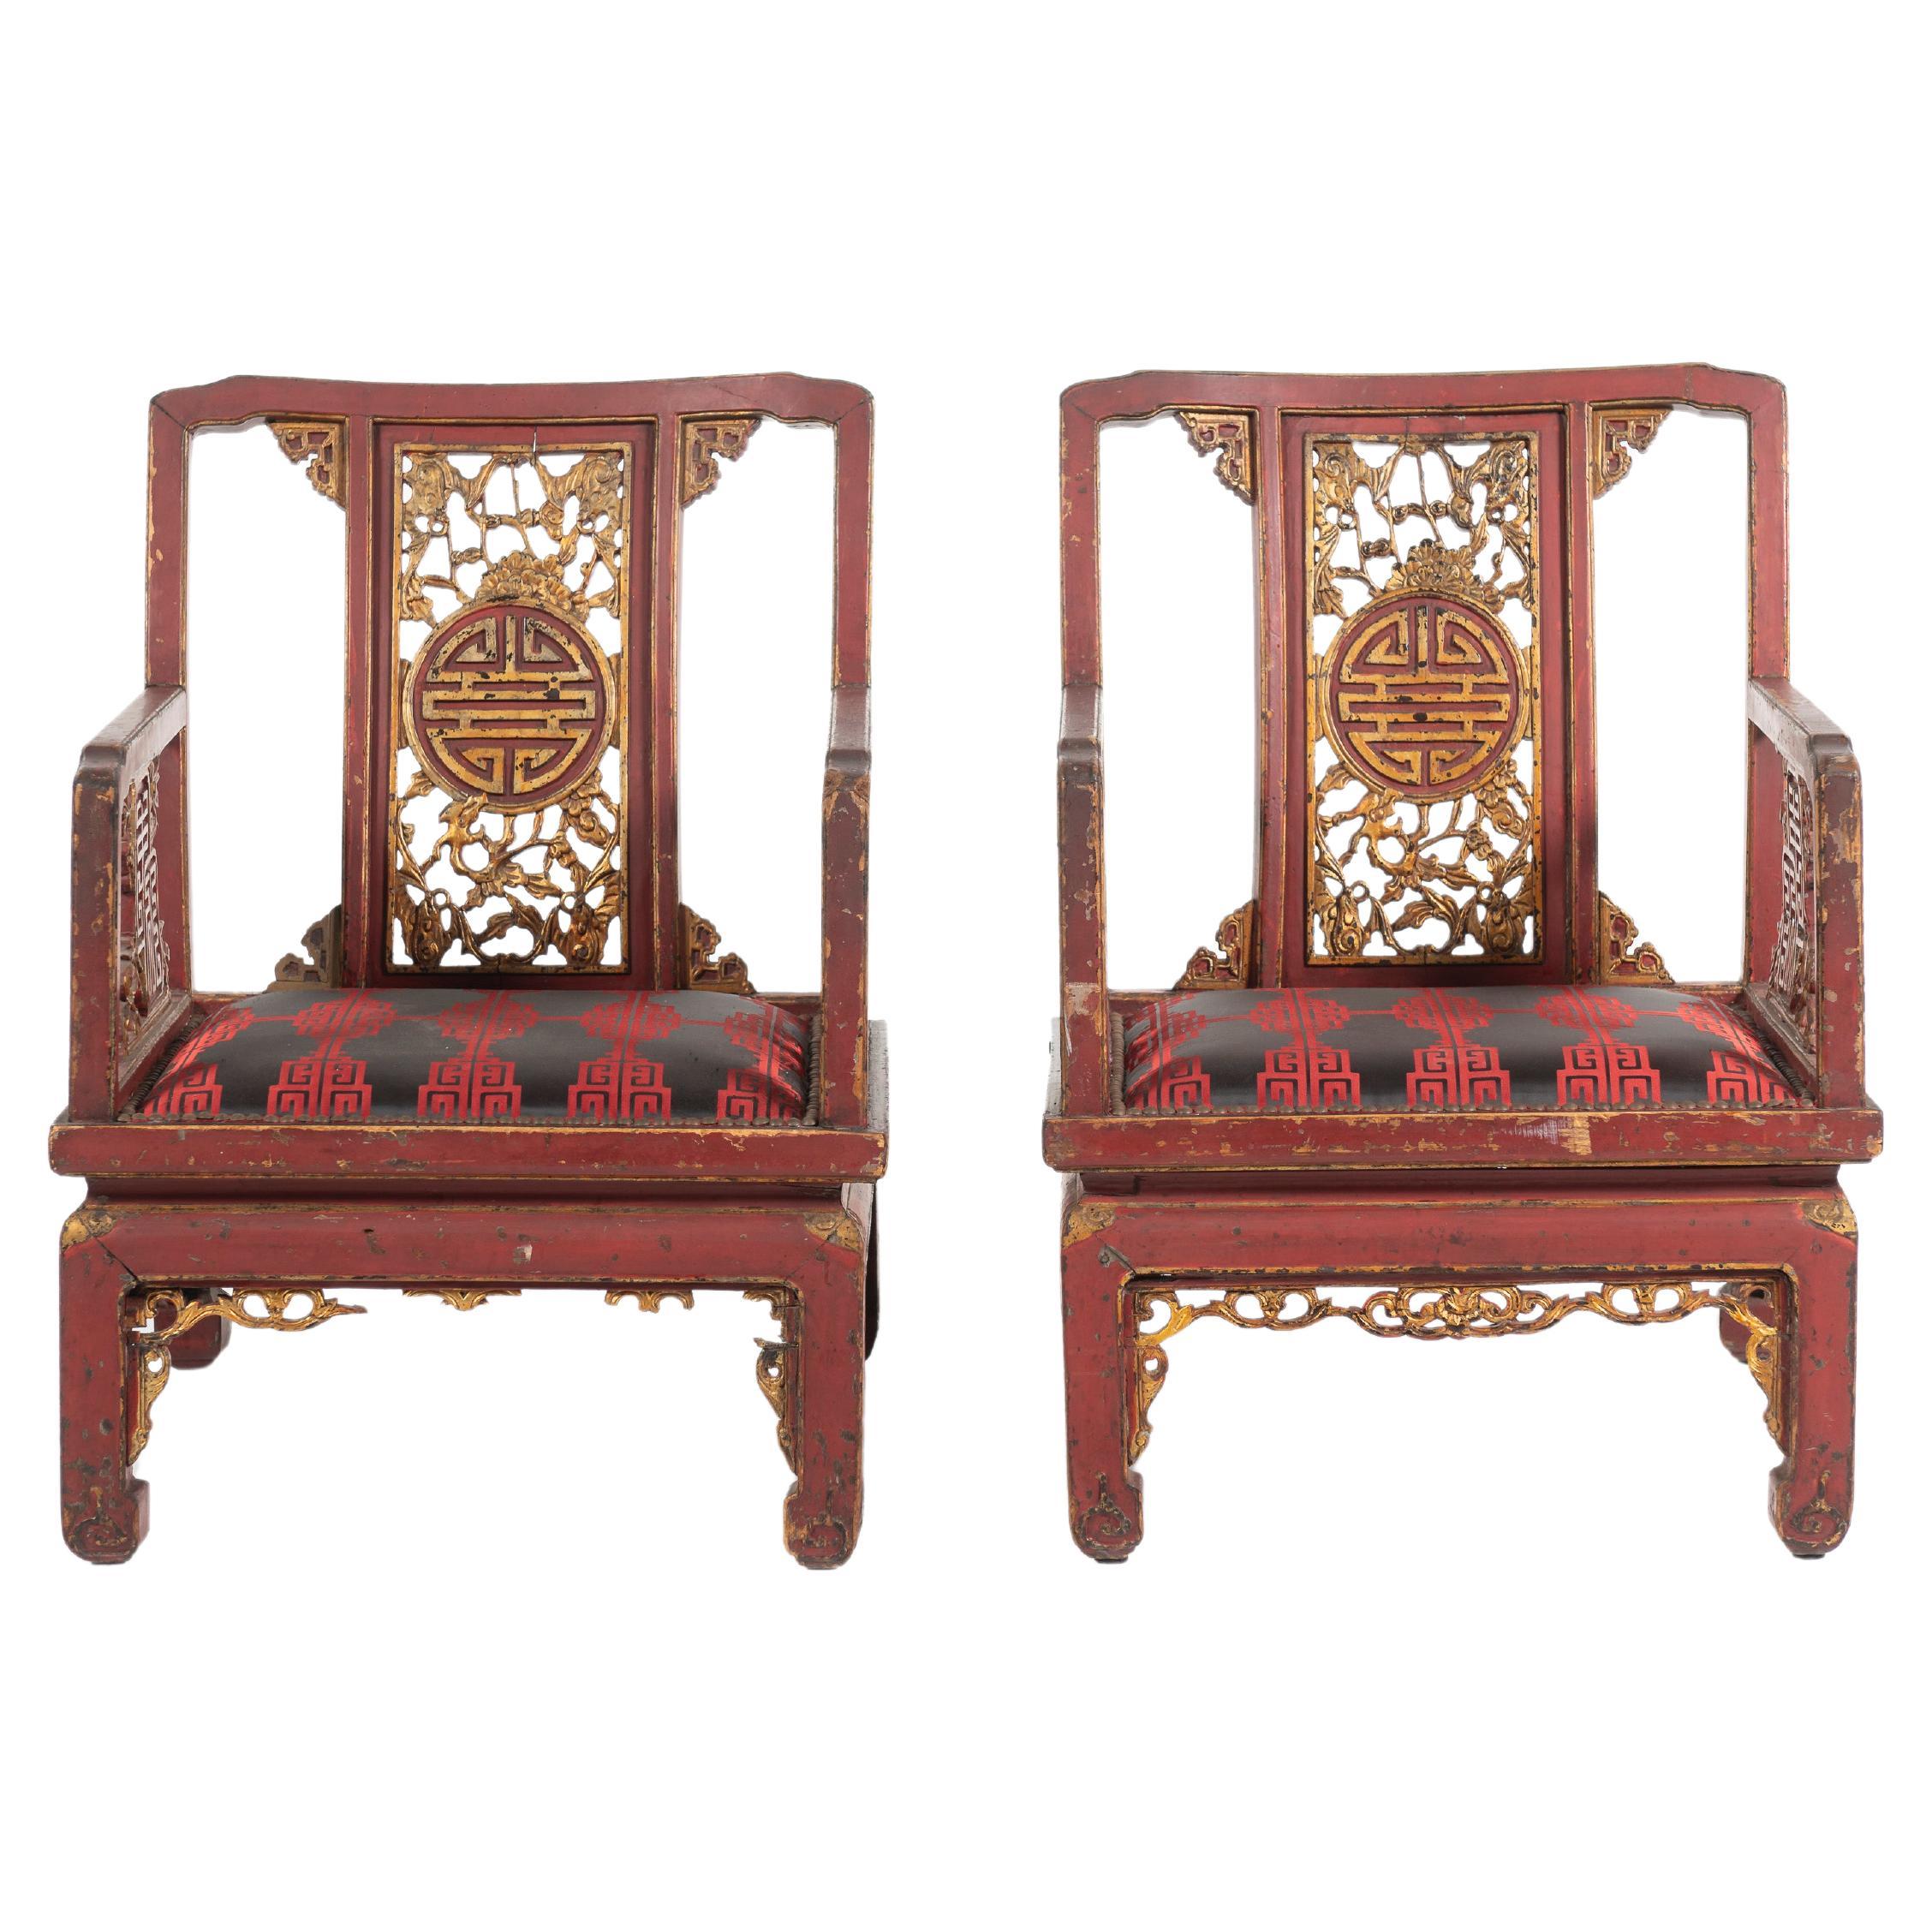 Paire d'anciennes chaises à accoudoirs de style Chinoiserie française de la fin du 19ème siècle. Ces chaises grandioses sont peintes en rouge chinois avec des applications décoratives en or sur les motifs ajourés traditionnels. Munies de coussins en